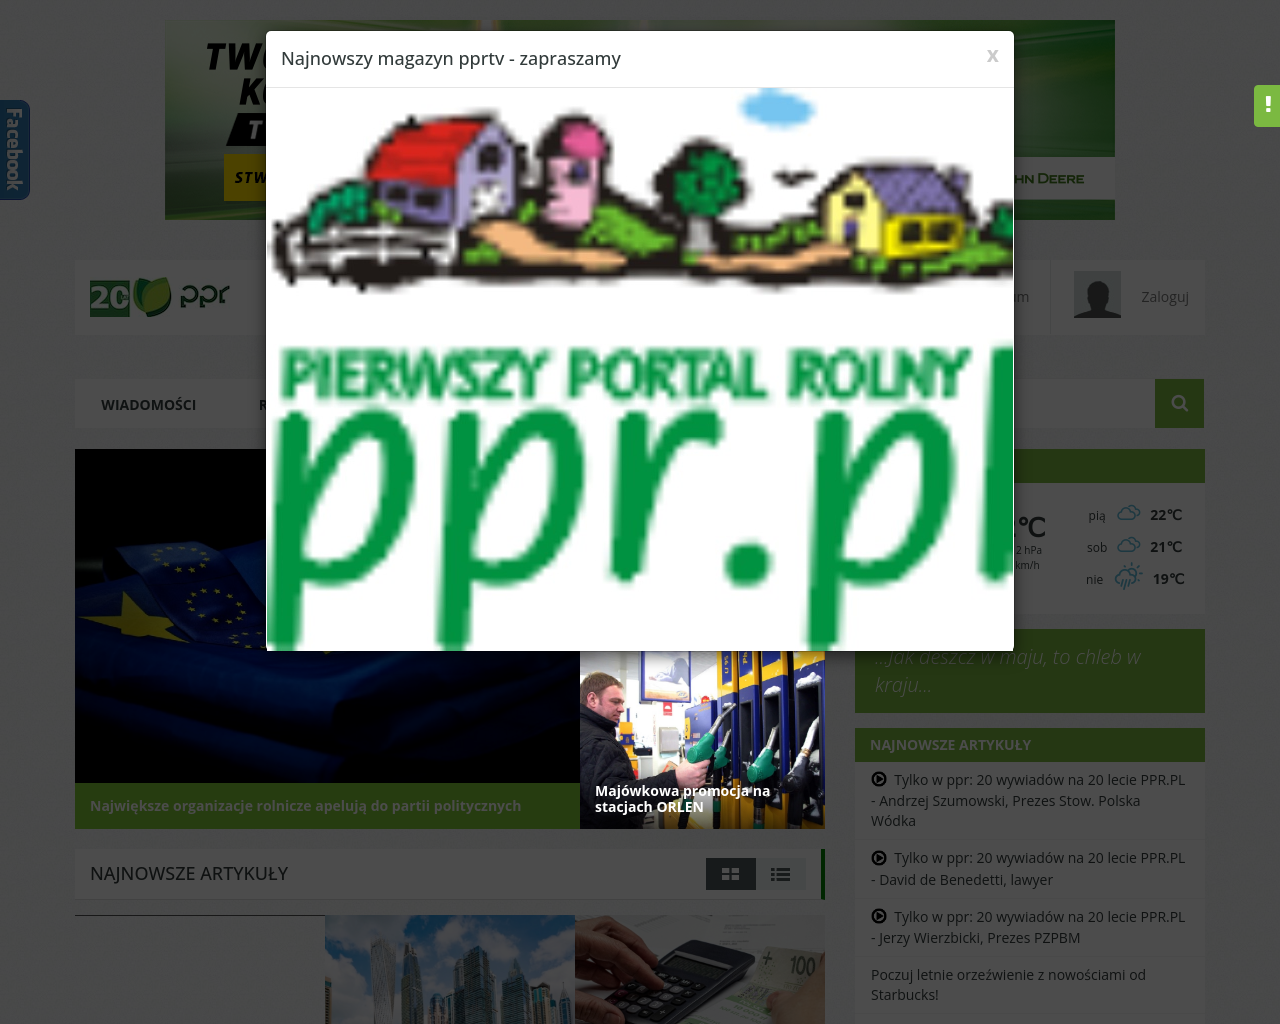 ppr.pl